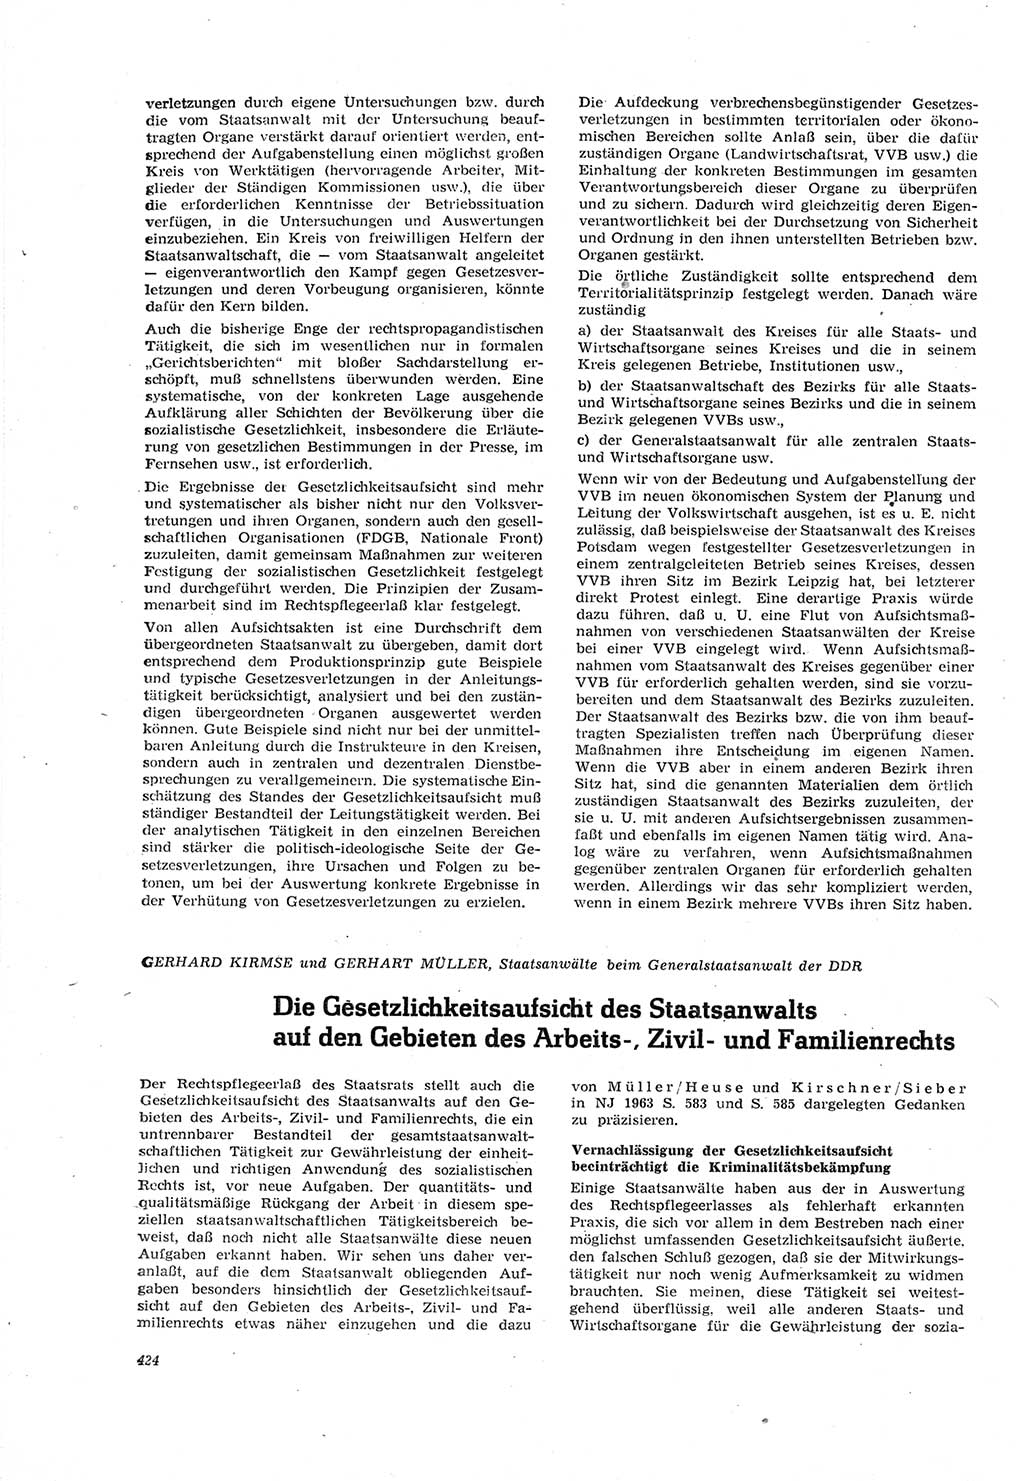 Neue Justiz (NJ), Zeitschrift für Recht und Rechtswissenschaft [Deutsche Demokratische Republik (DDR)], 18. Jahrgang 1964, Seite 424 (NJ DDR 1964, S. 424)